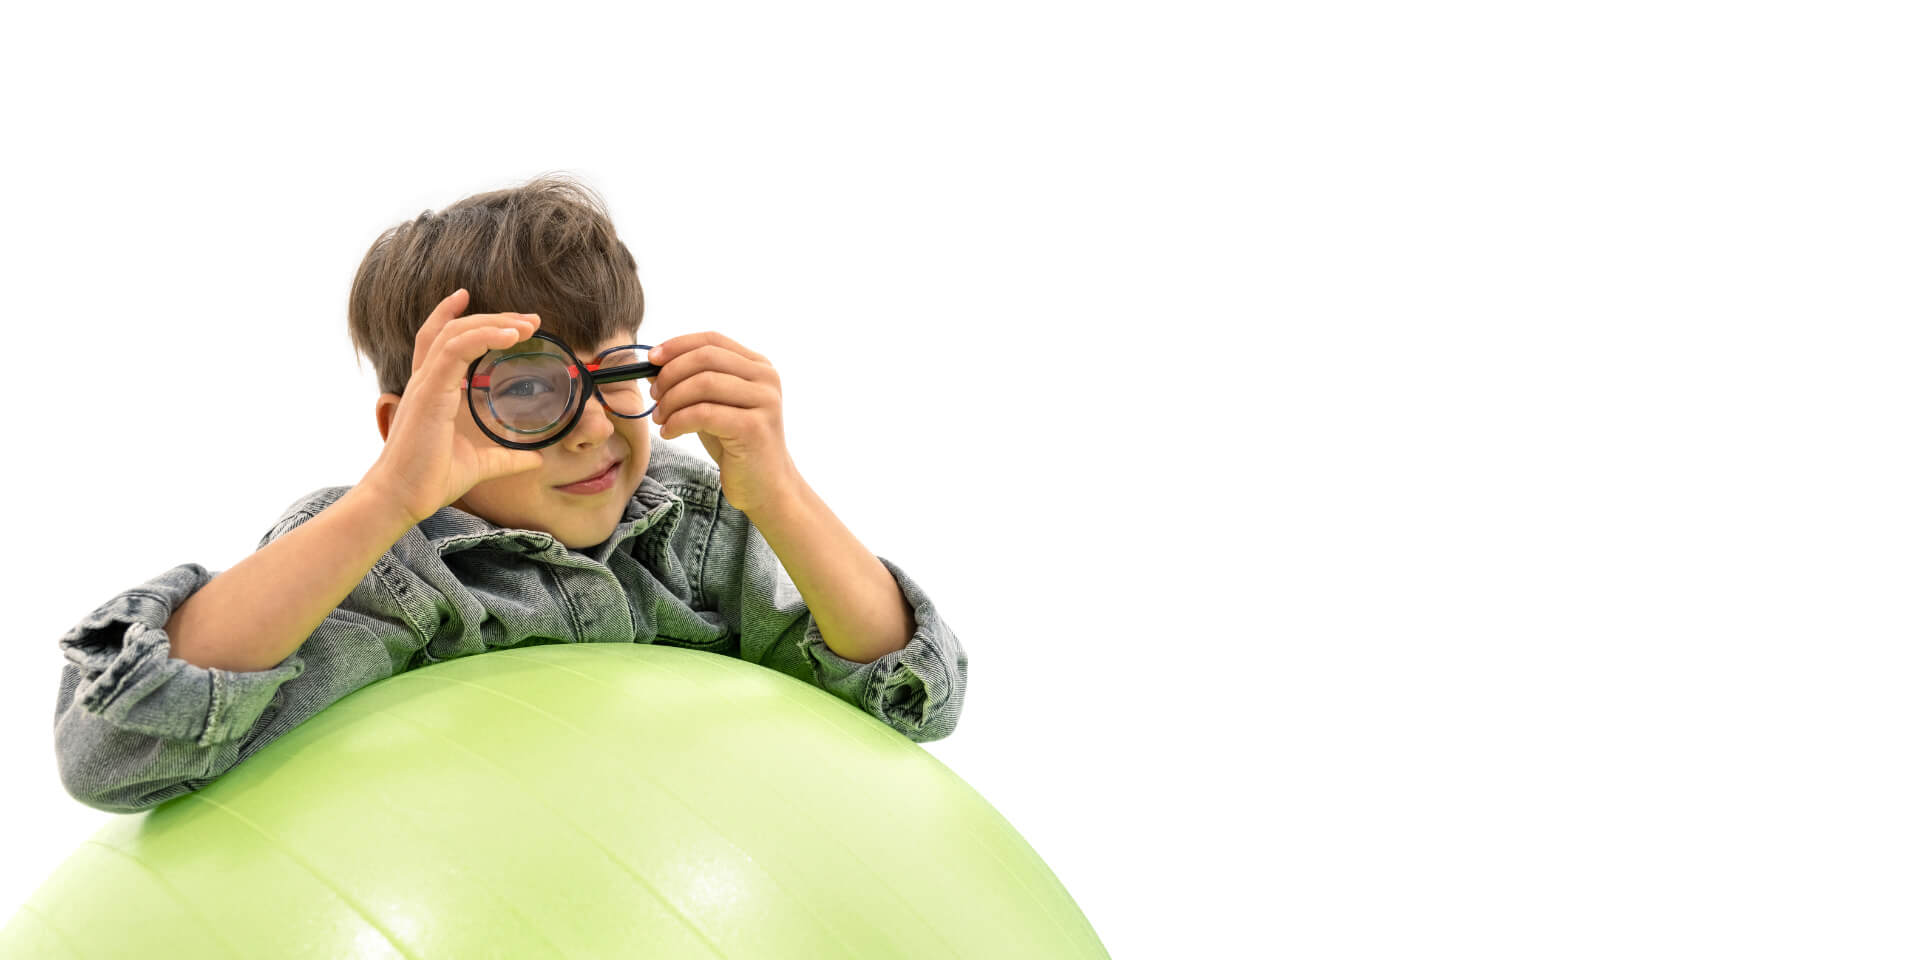 En pojke med ZEISS glas för myopihantering lutar sig mot en gymnastikboll och håller ett förstoringsglas framför ena ögat.